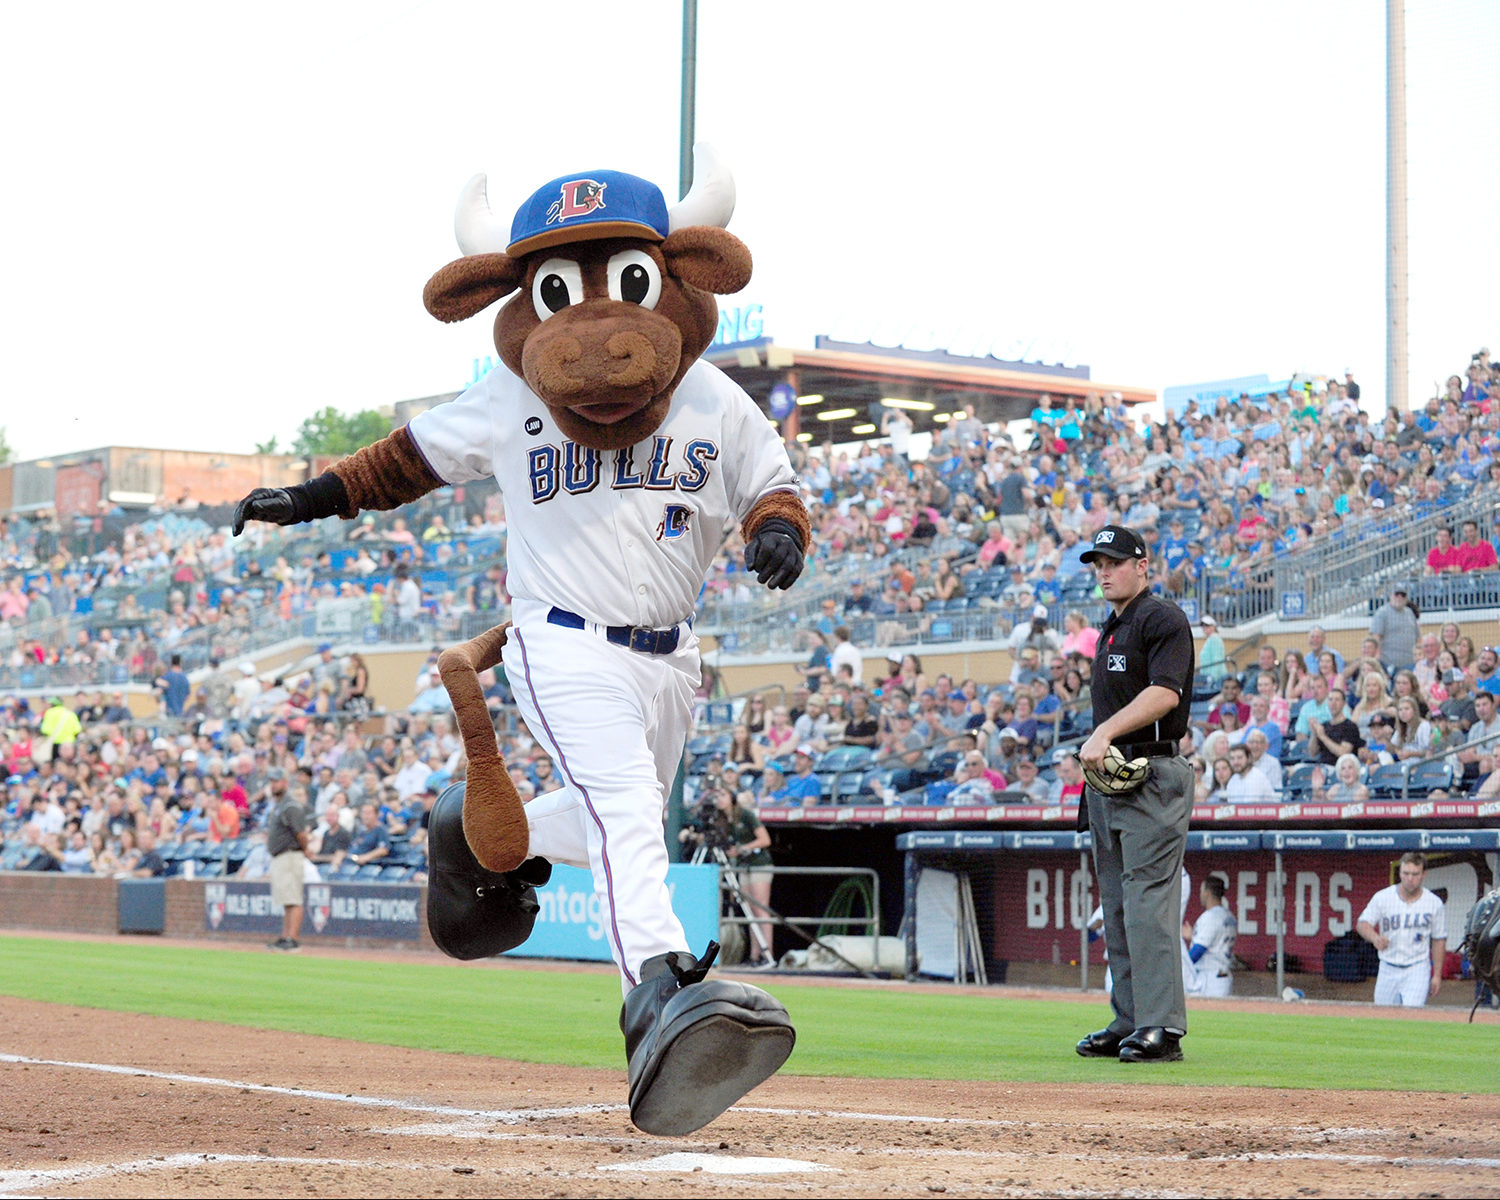 15 most bizarre minor-league baseball mascots in America